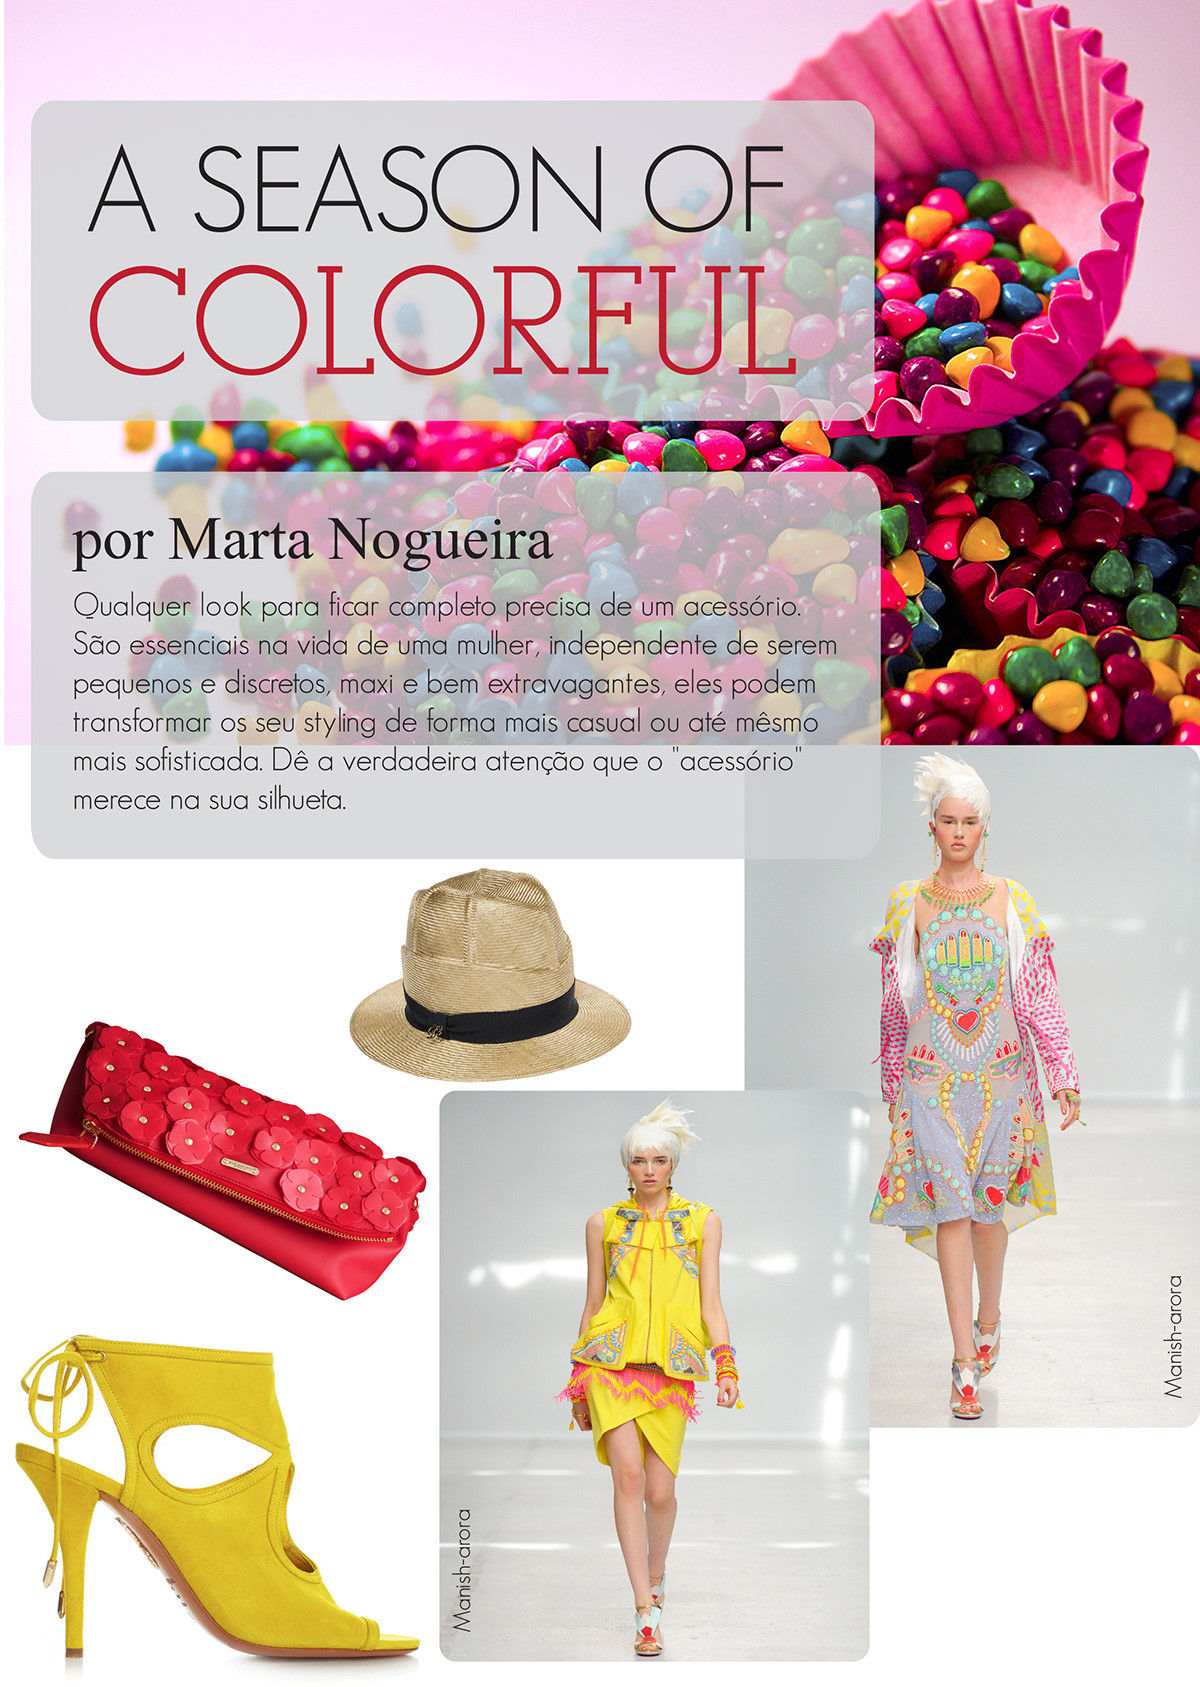 paginação design gráfico moda revista look2impress editorial